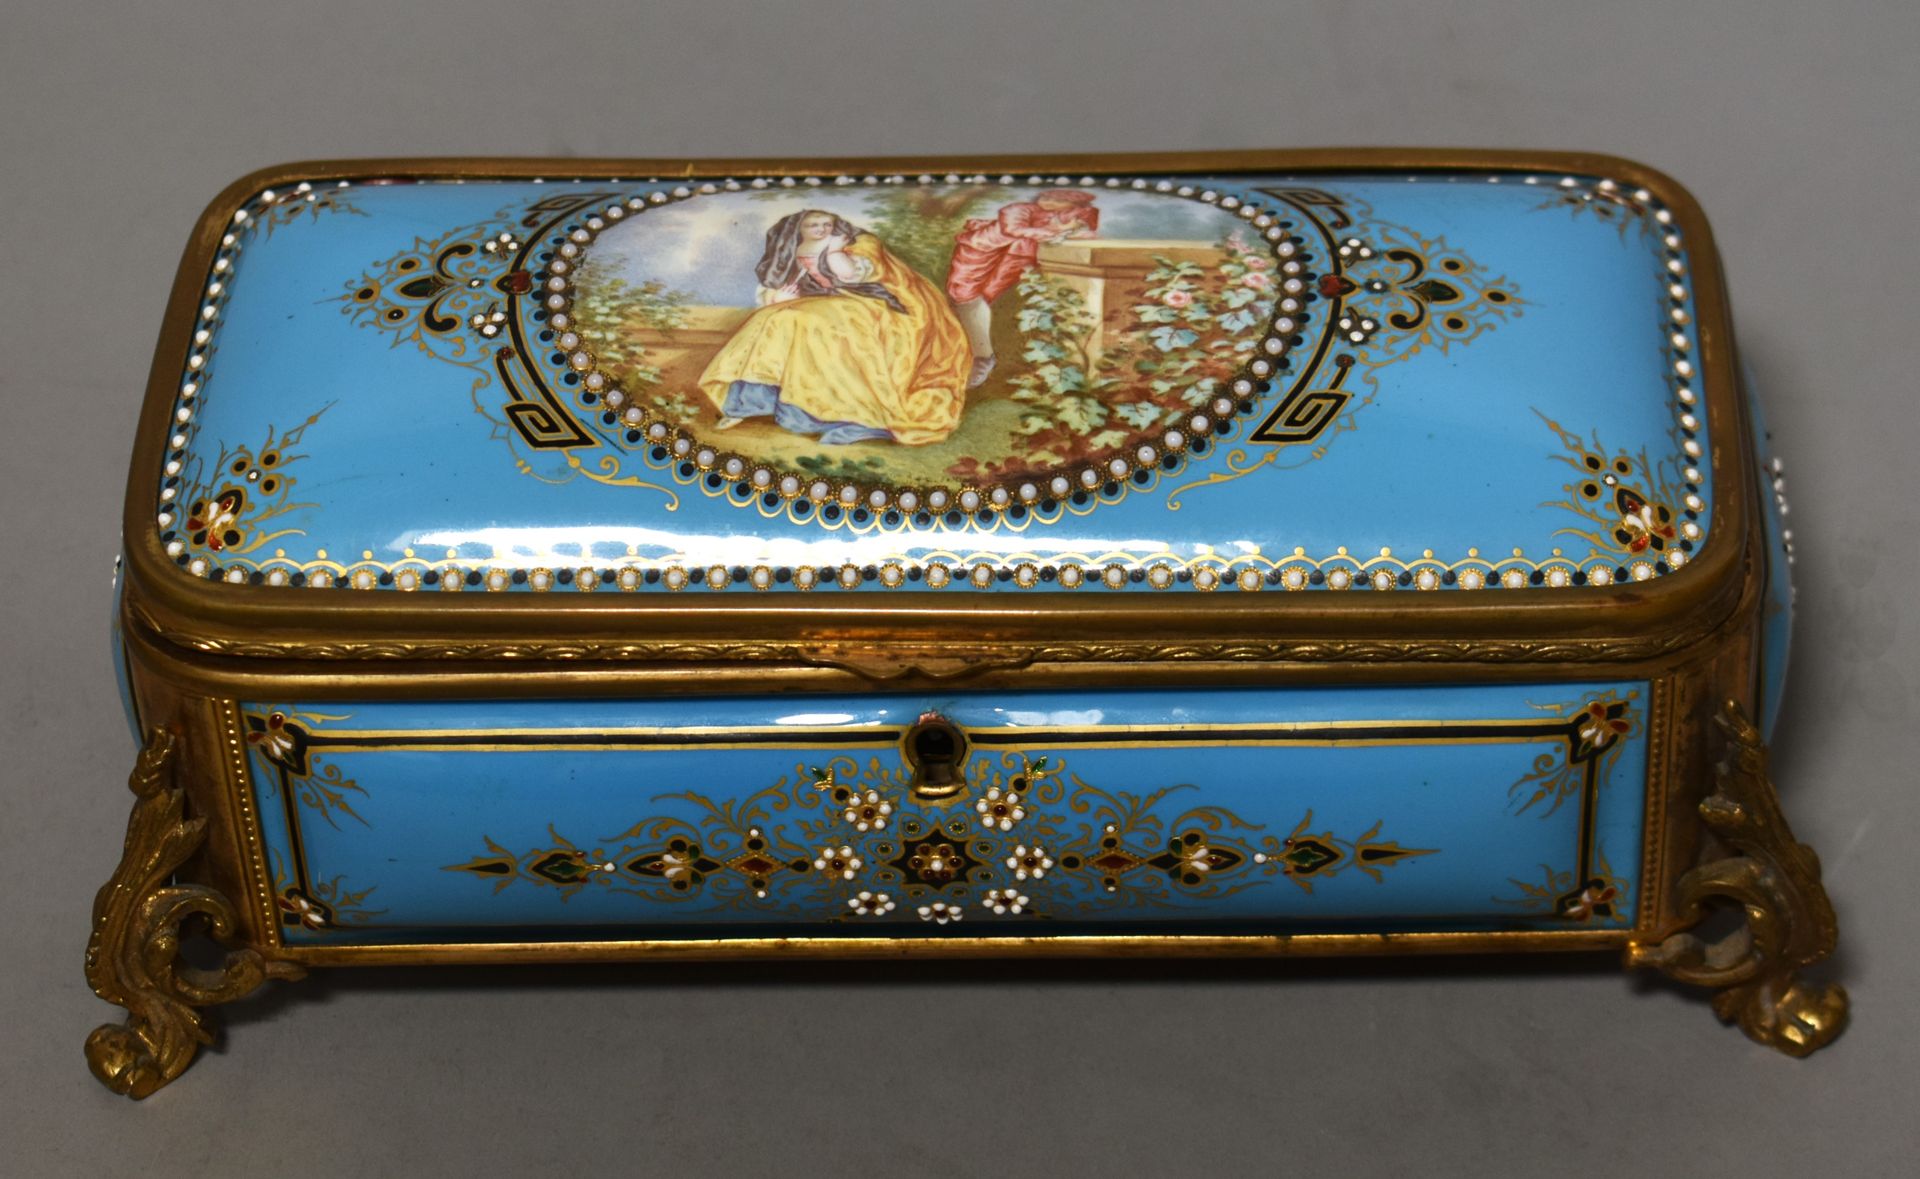 Null 长方形青瓷镀金金属盒，盒盖上饰有多彩伽蓝图案和小珍珠楣饰。长 21 厘米